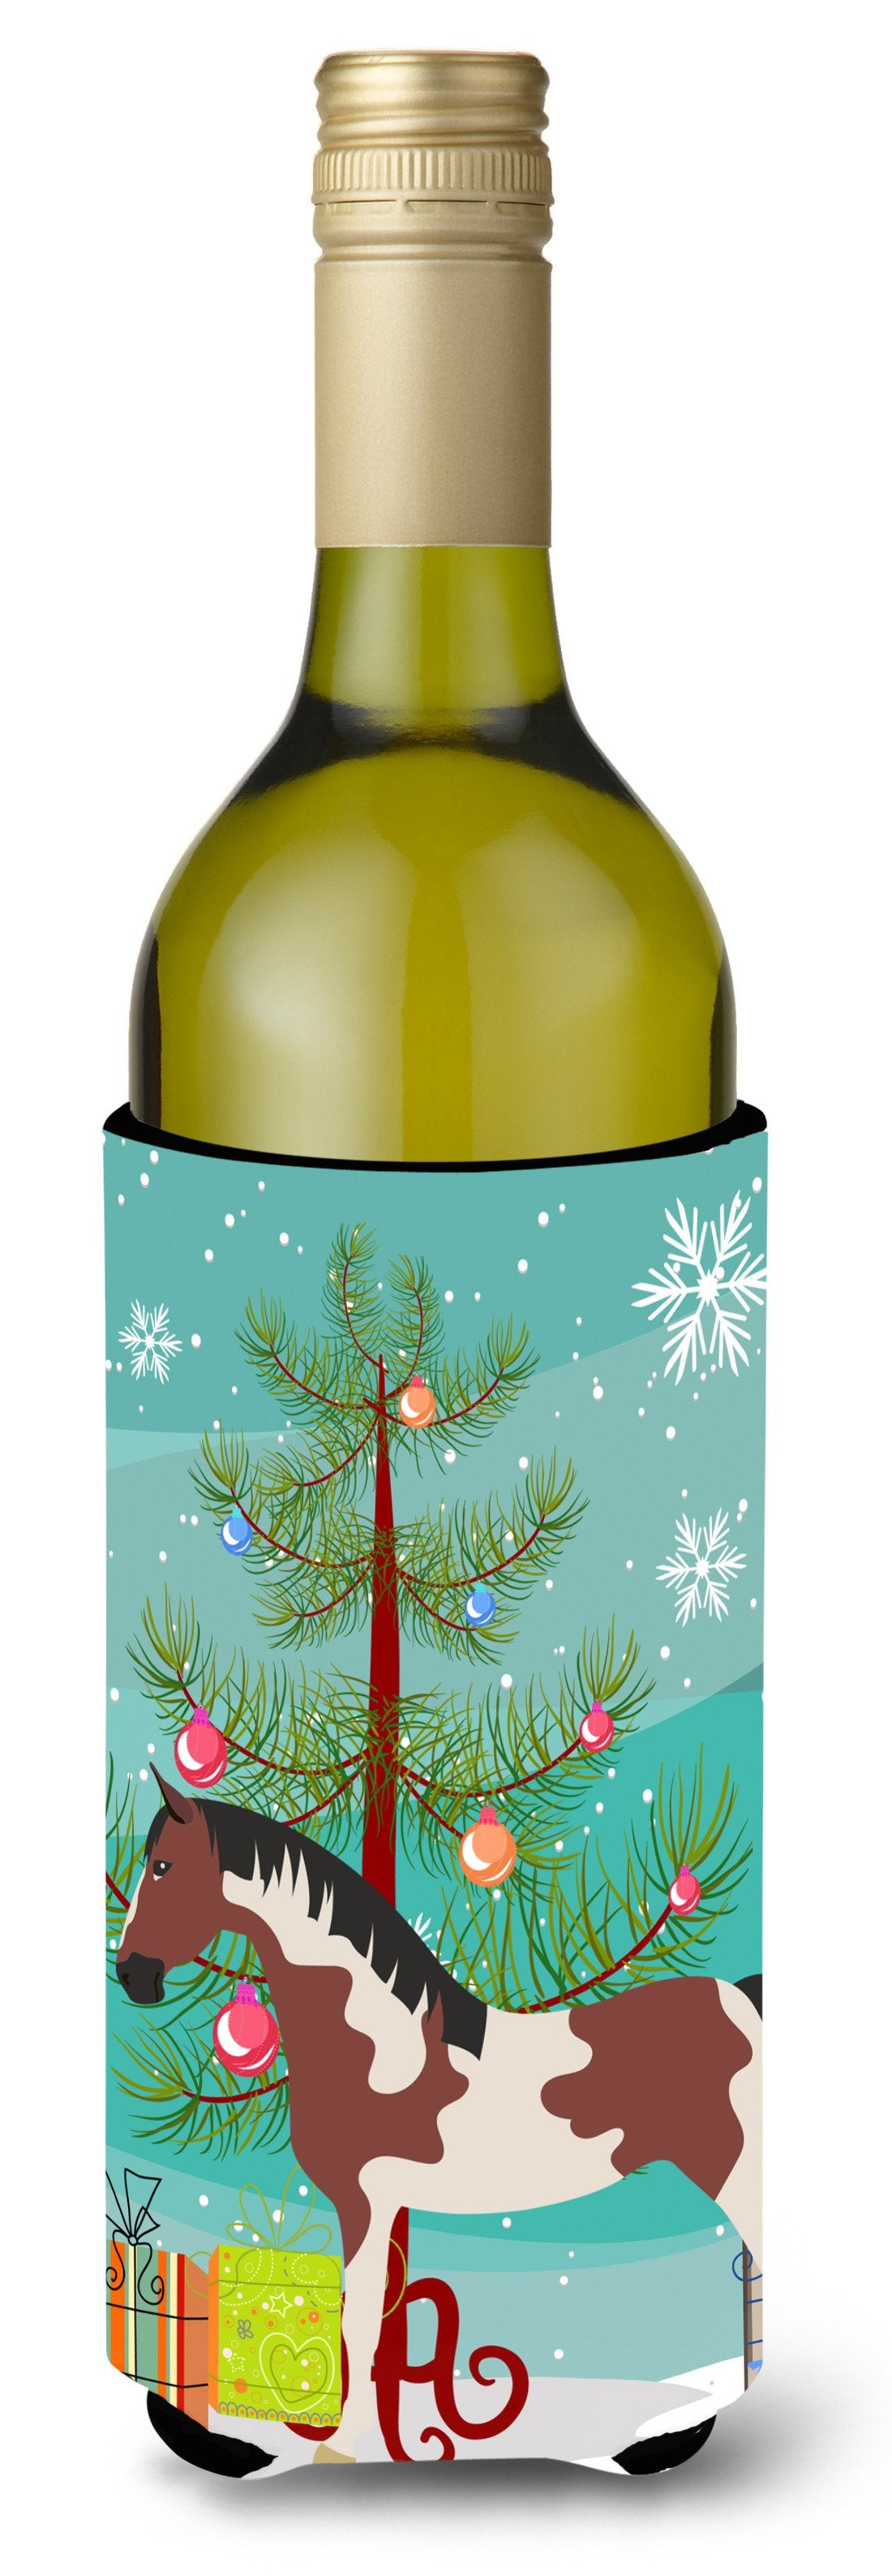 Pinto Horse Christmas Wine Bottle Beverge Insulator Hugger BB9274LITERK by Caroline's Treasures